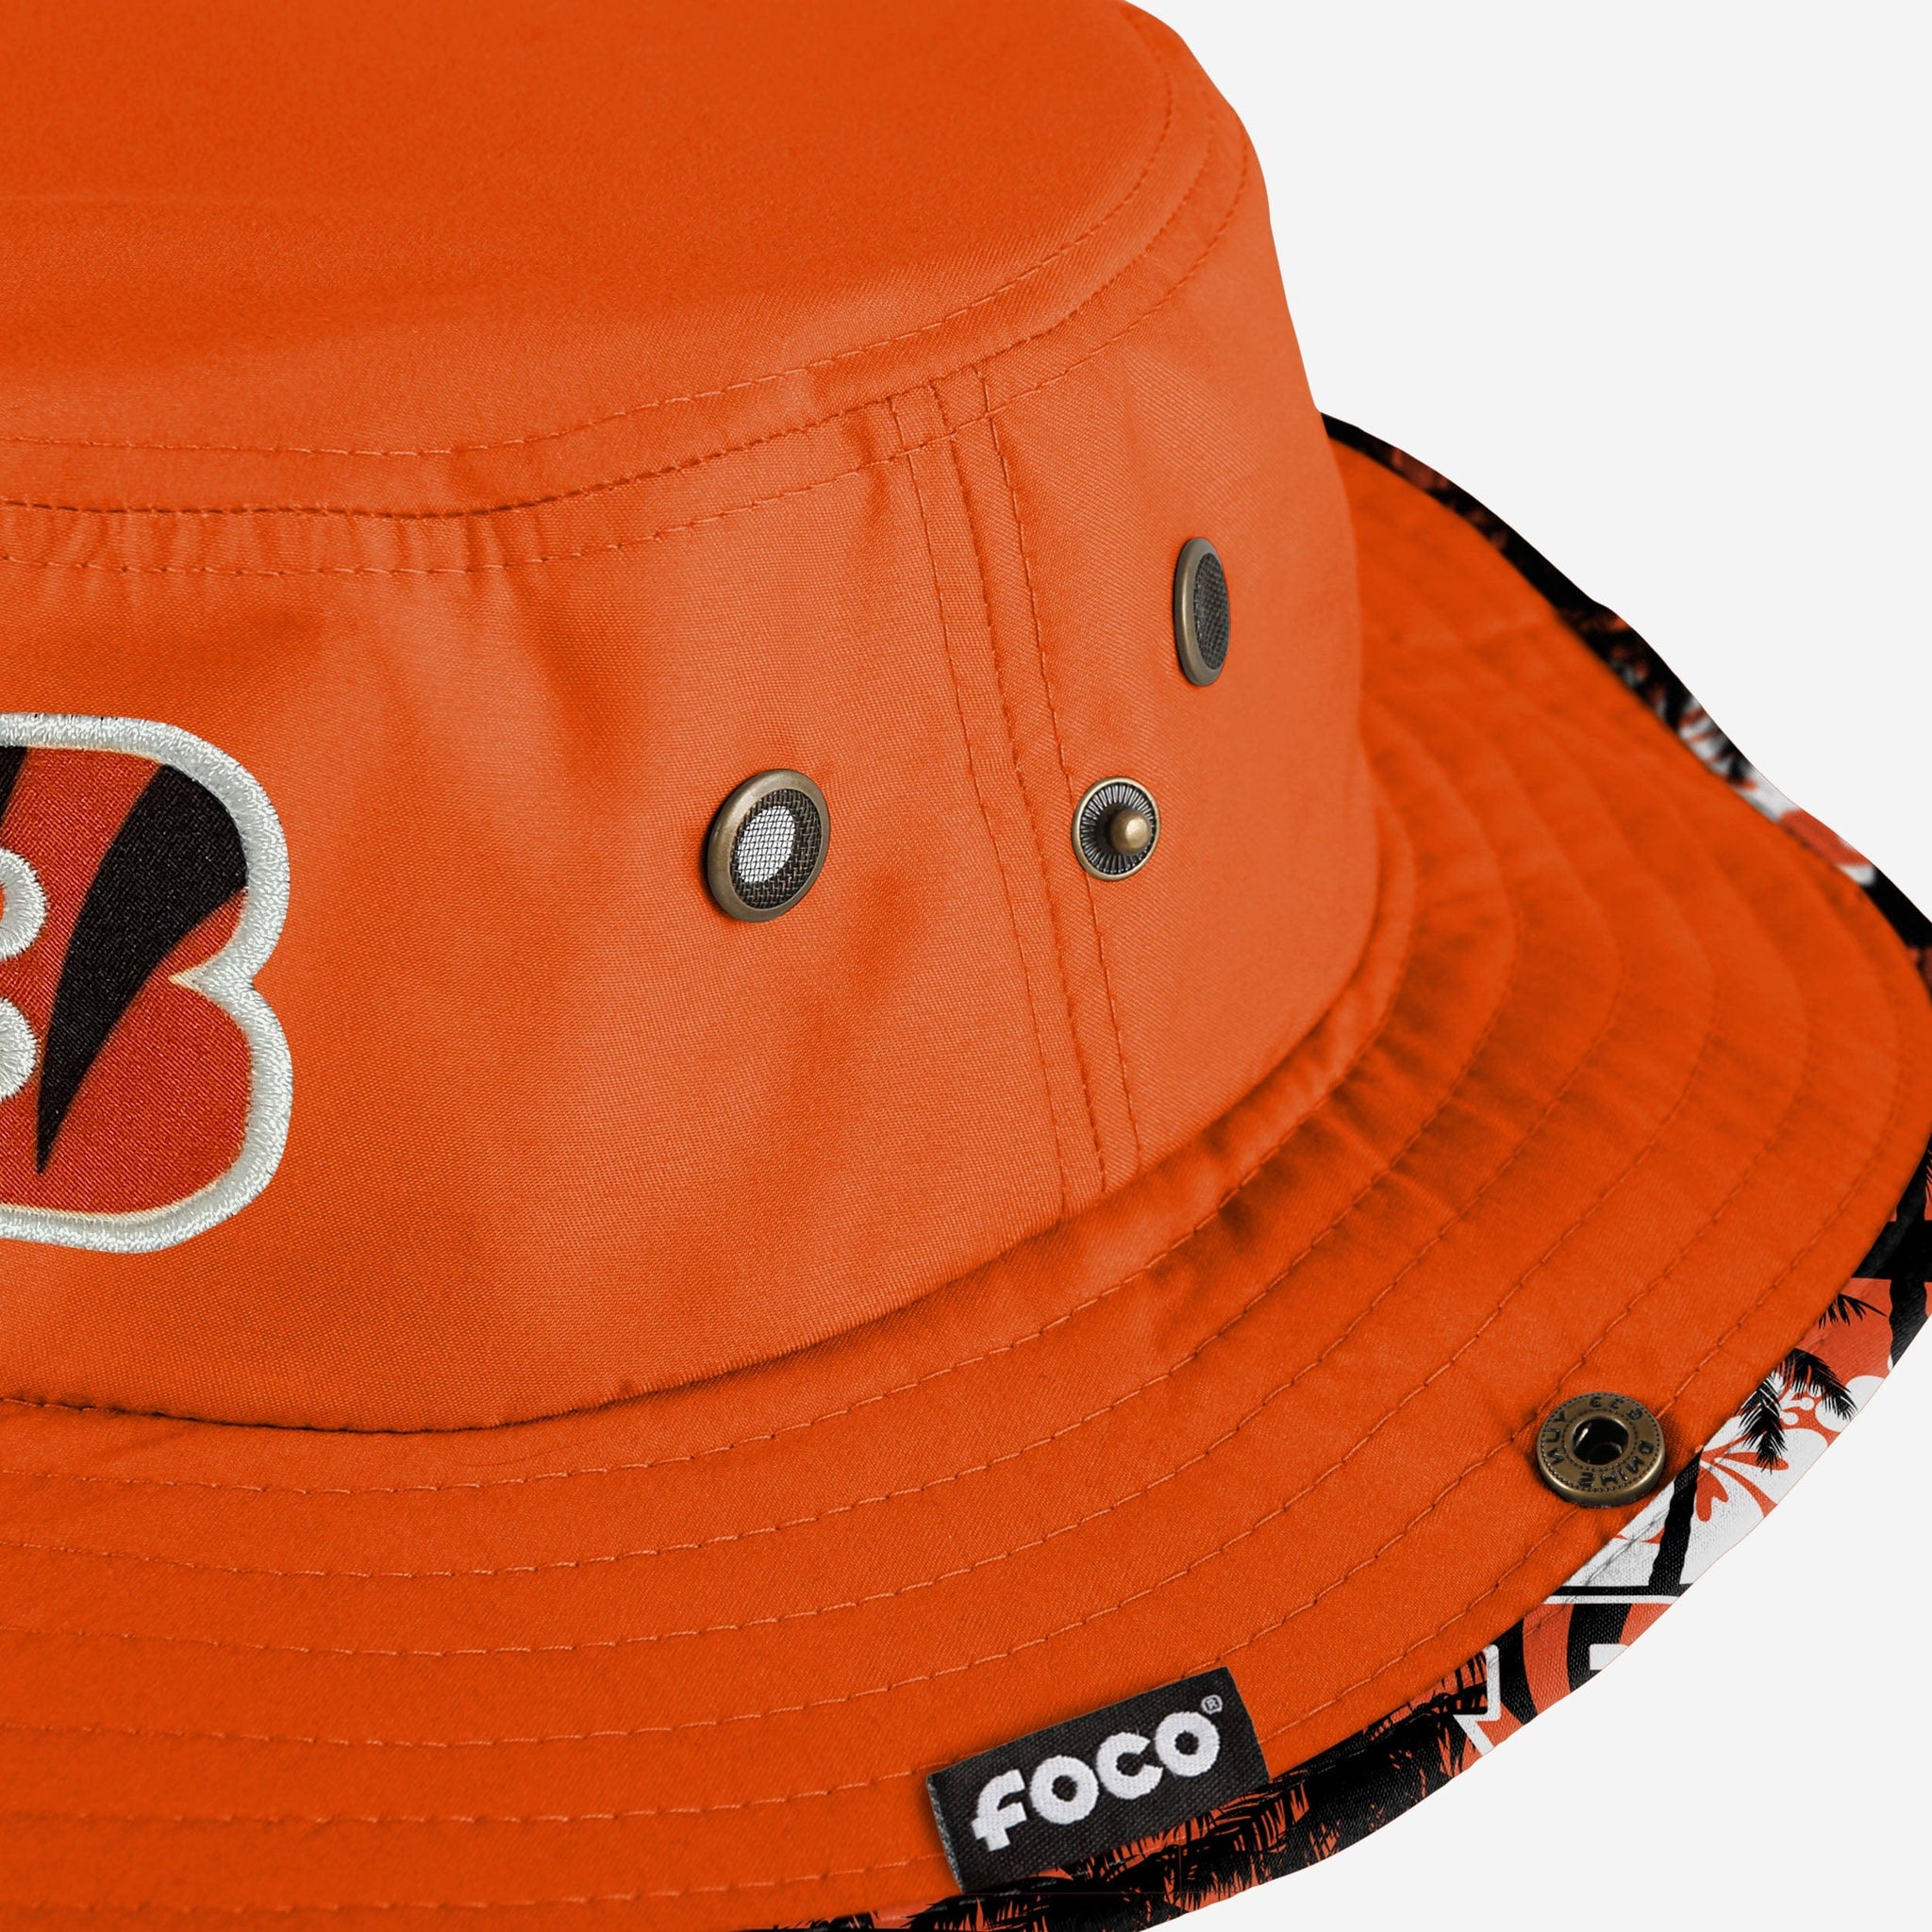 Cincinnati Bengals Bucket Hats, Bengals Fishing Hat, Boonie Hat